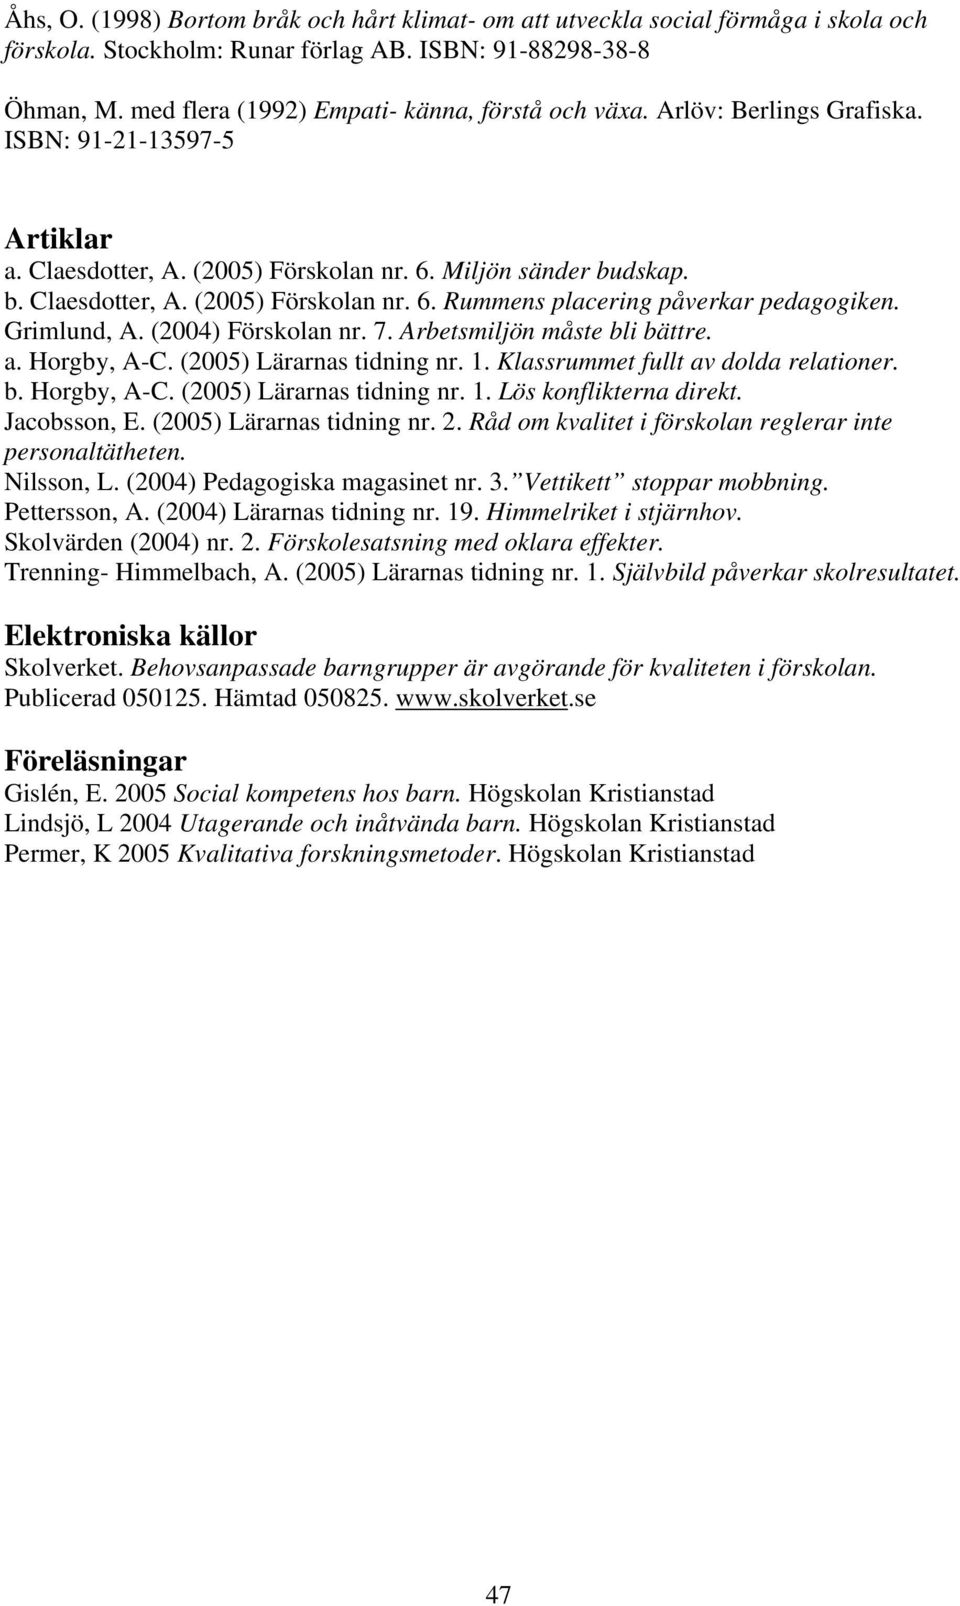 Grimlund, A. (2004) Förskolan nr. 7. Arbetsmiljön måste bli bättre. a. Horgby, A-C. (2005) Lärarnas tidning nr. 1. Klassrummet fullt av dolda relationer. b. Horgby, A-C. (2005) Lärarnas tidning nr. 1. Lös konflikterna direkt.